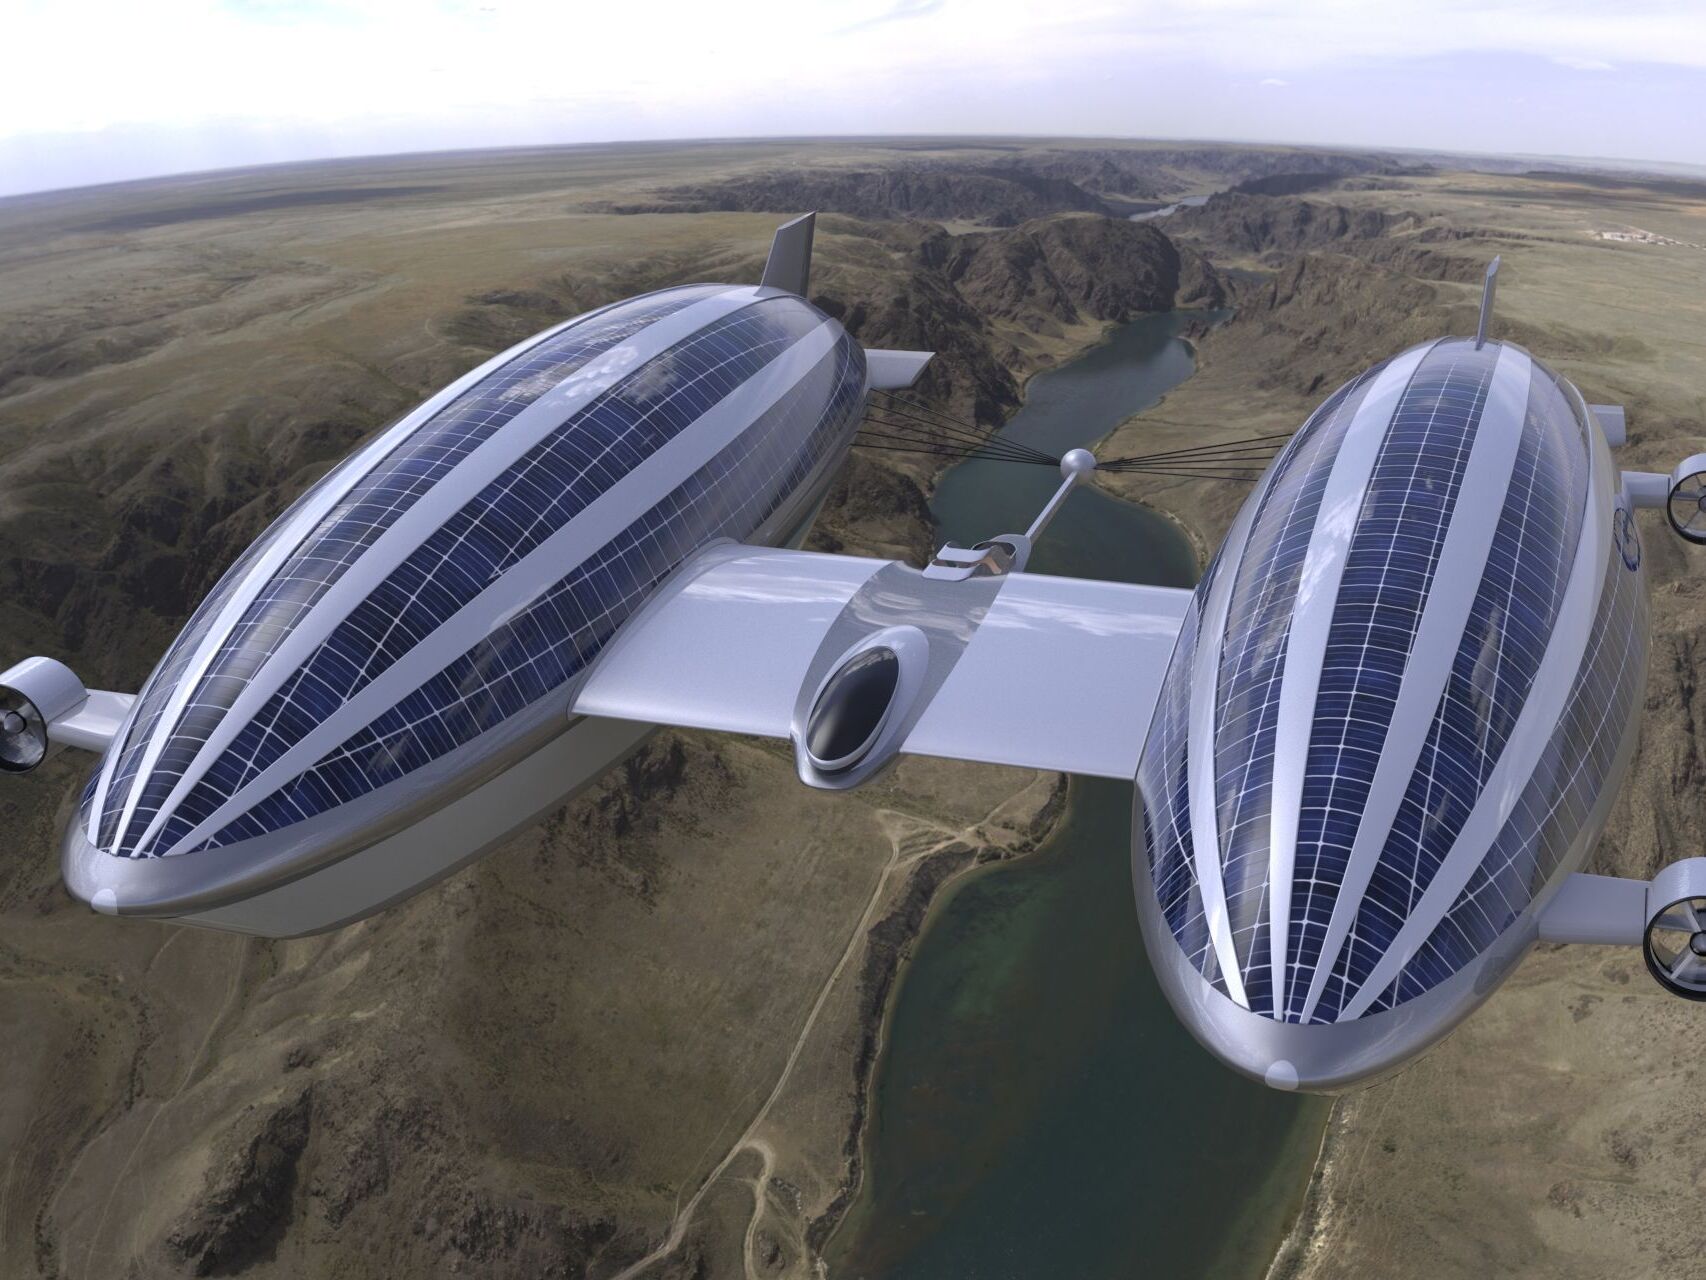 ラザリーニ デザイン スタジオが開発した、持続可能な空中および水上モビリティ用の「スカイ ヨット」コンセプトの進化形またはバージョン 2